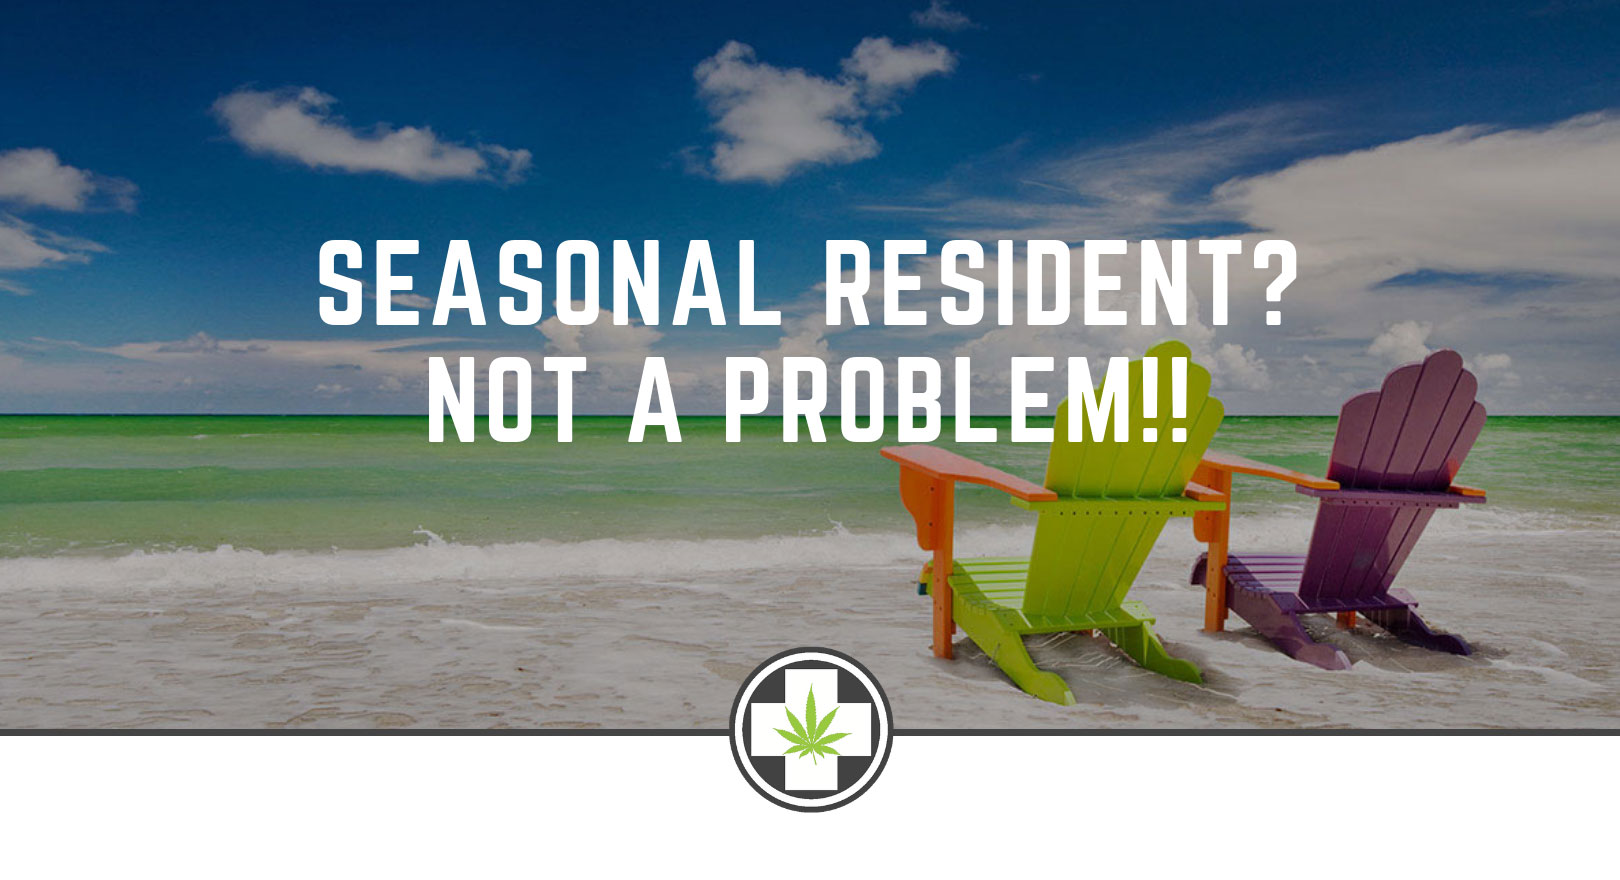 Seasonal Resident? Not a problem!!